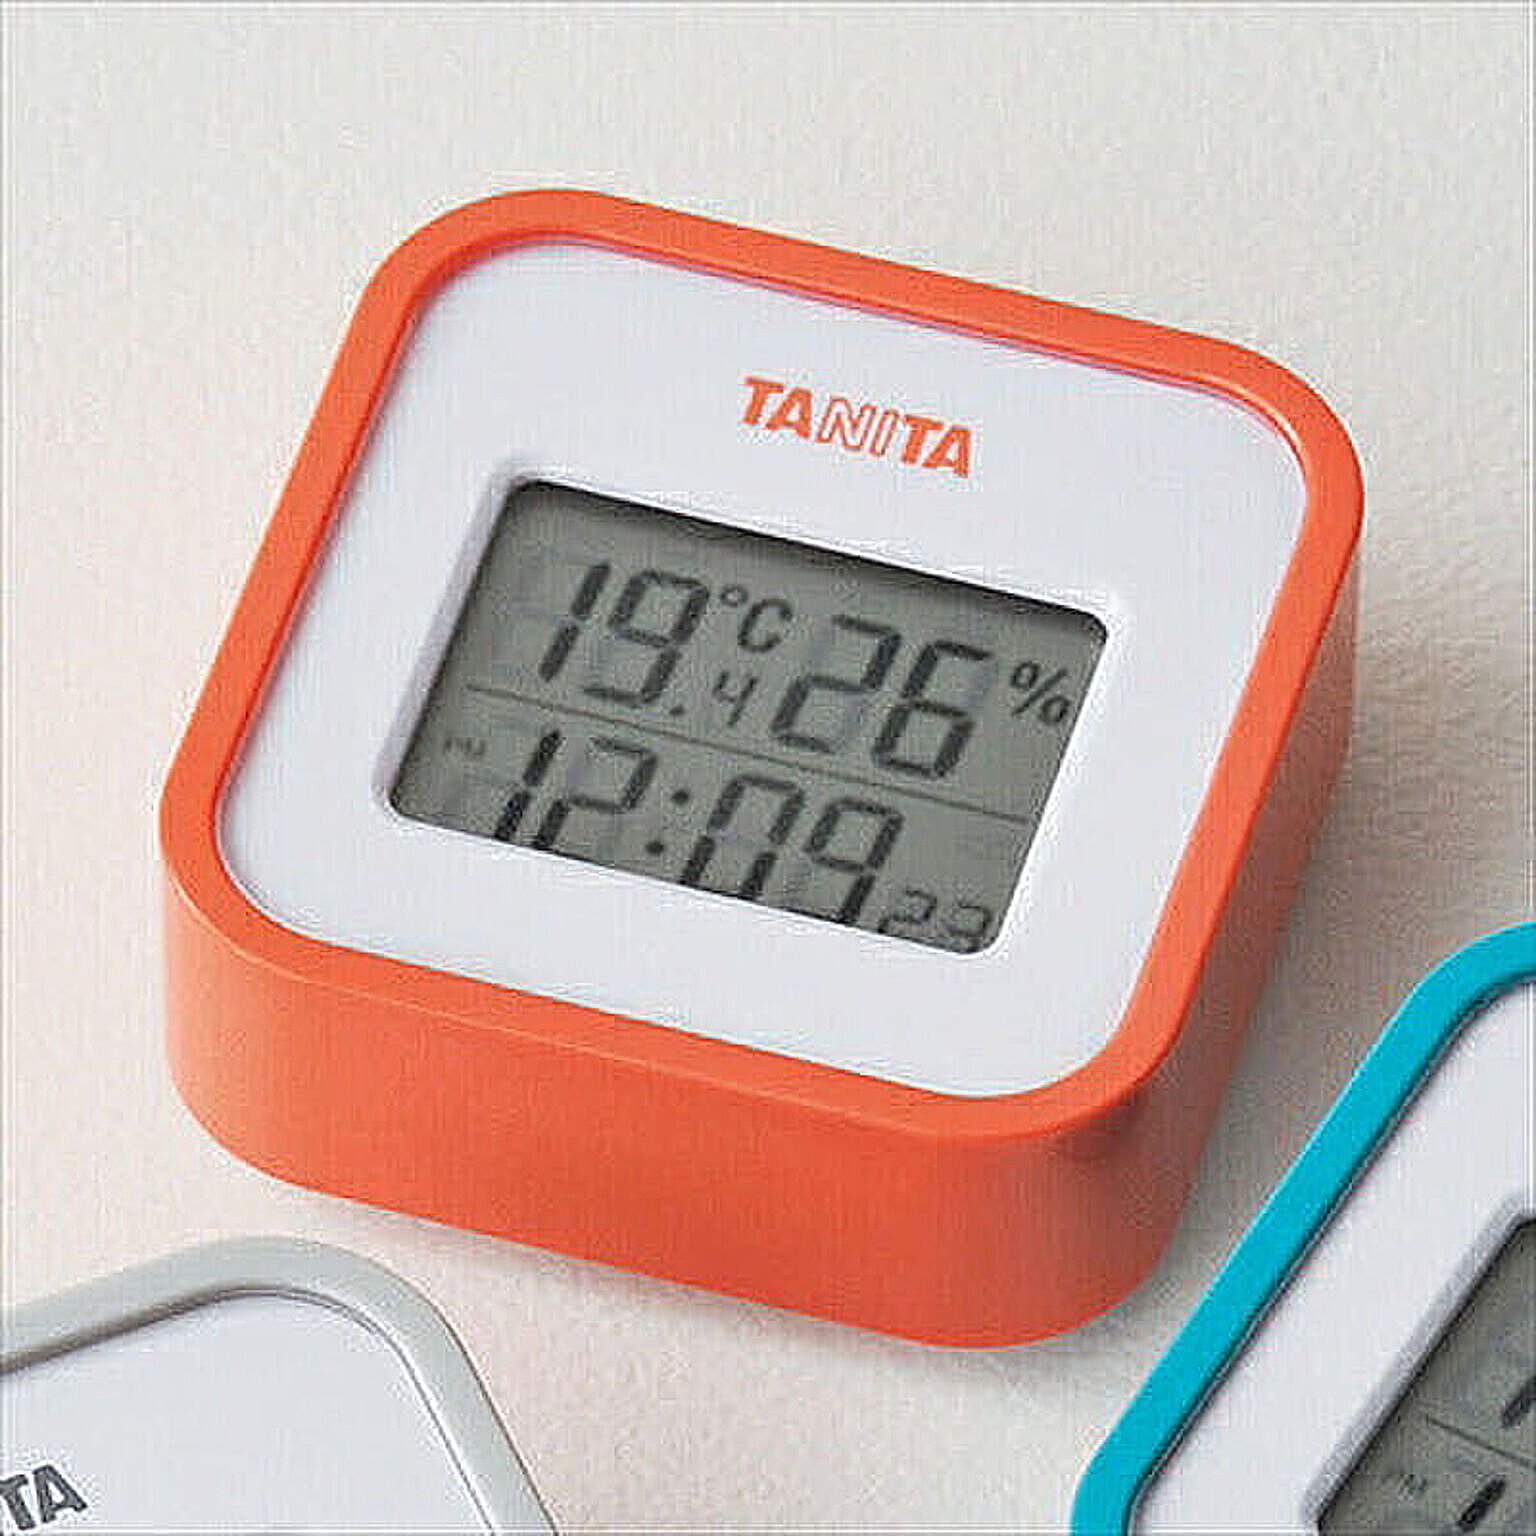 タニタ　デジタル温湿度計　オレンジ K20107938 管理No. 4904785555815